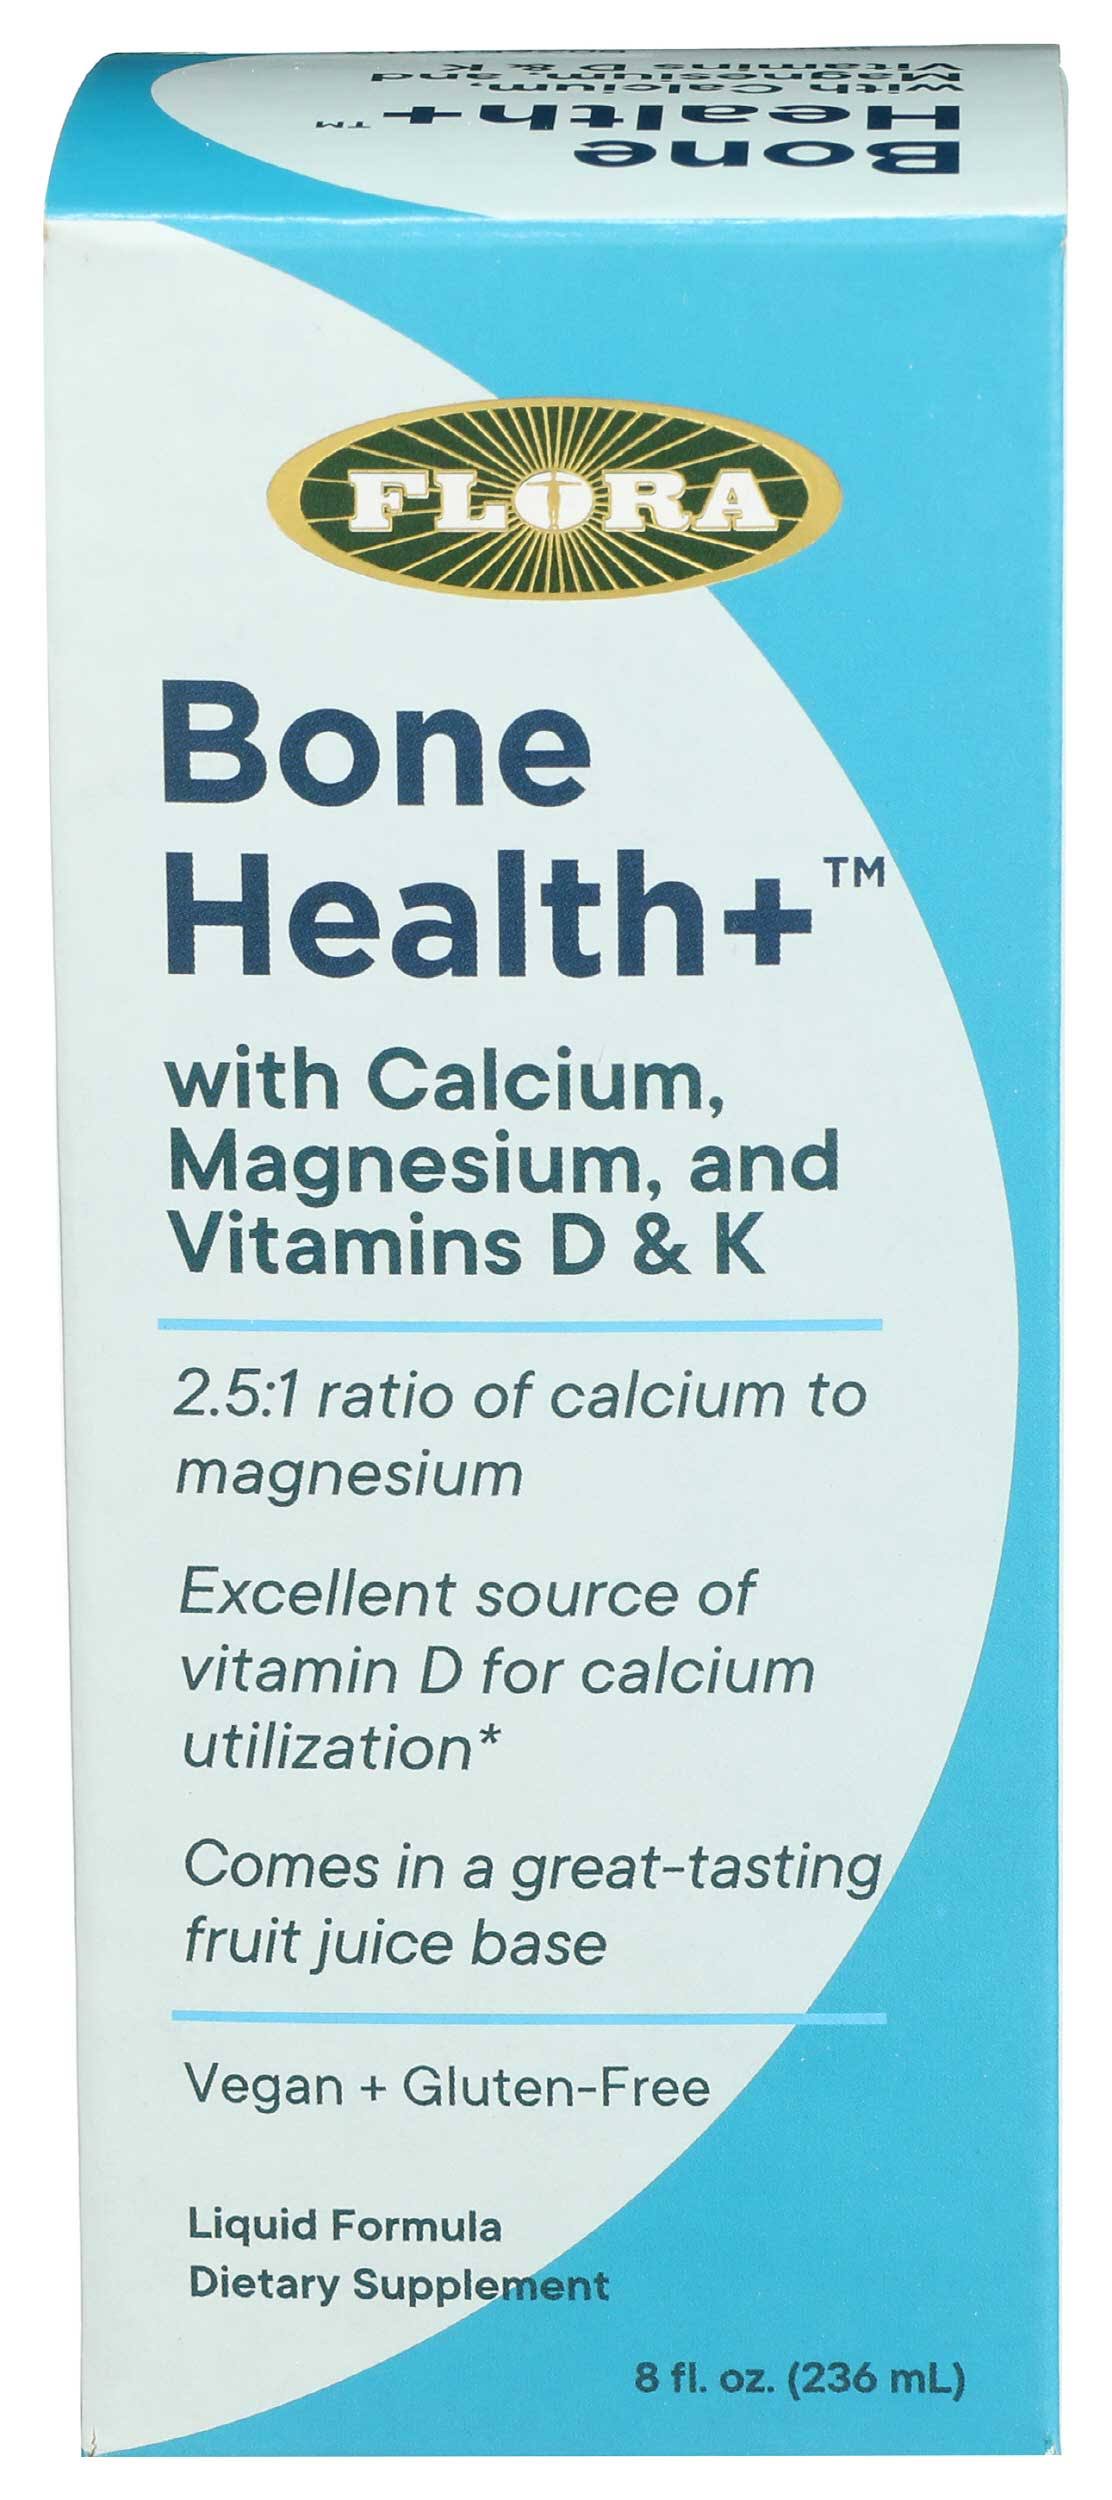 Bone Health+ with Calcium, Magnesium, and Vitamins D & K - 8 fl. oz.